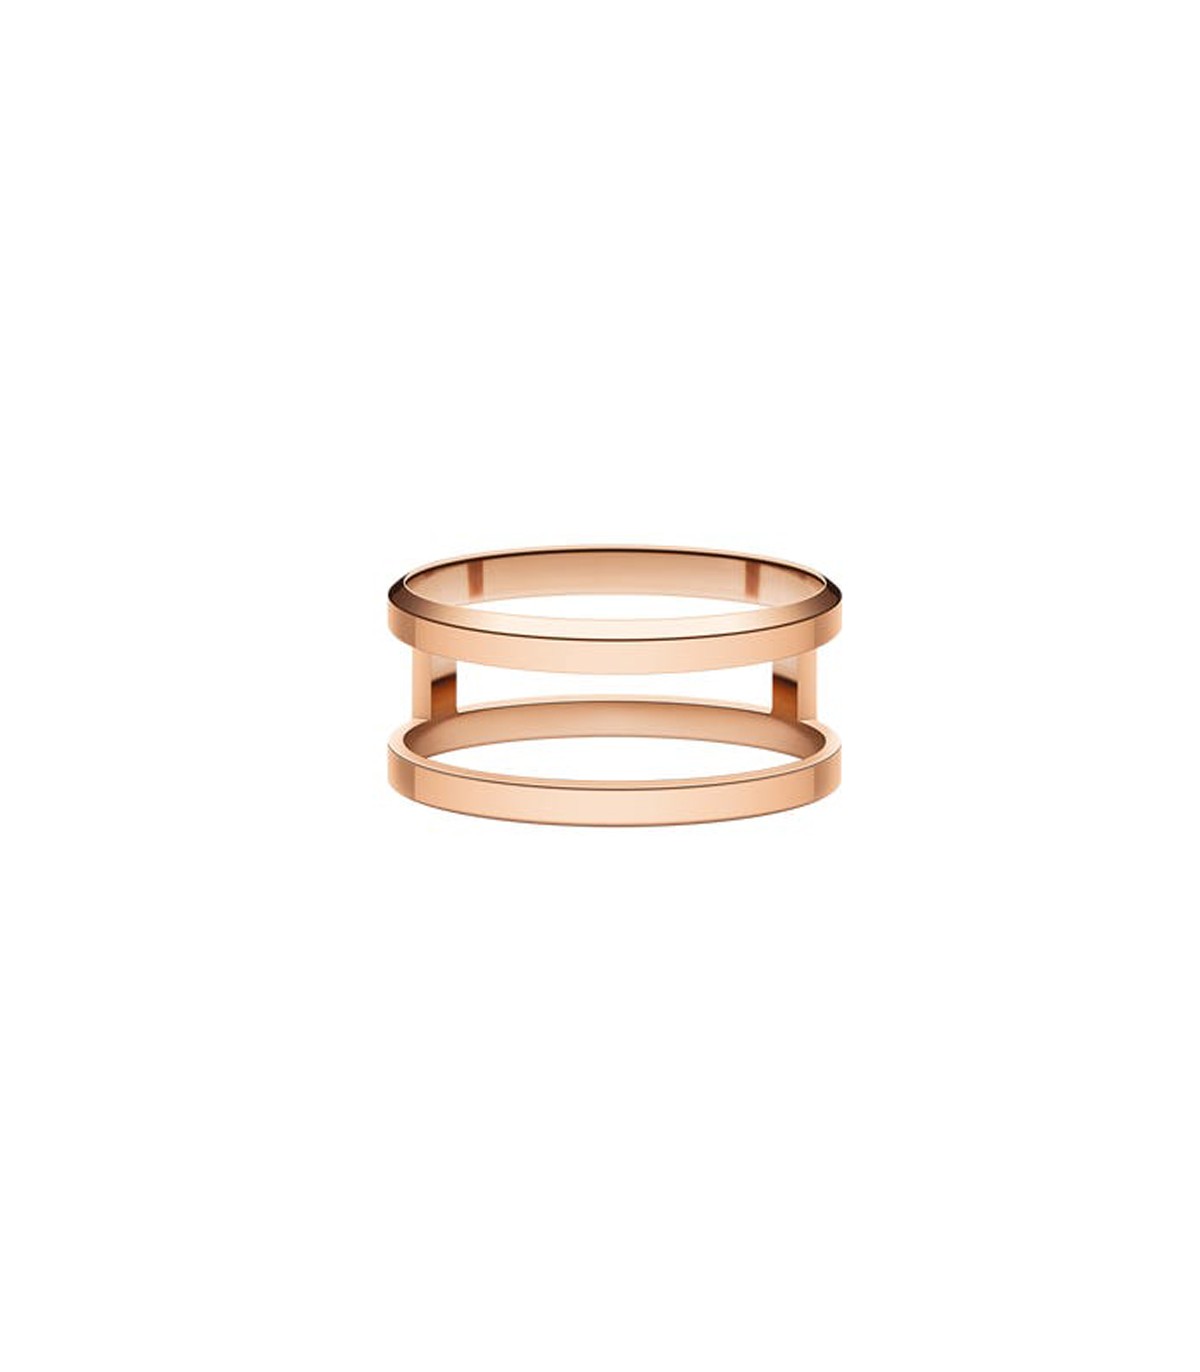 Buy Silver-Toned Rings for Women by Daniel Wellington Online | Ajio.com